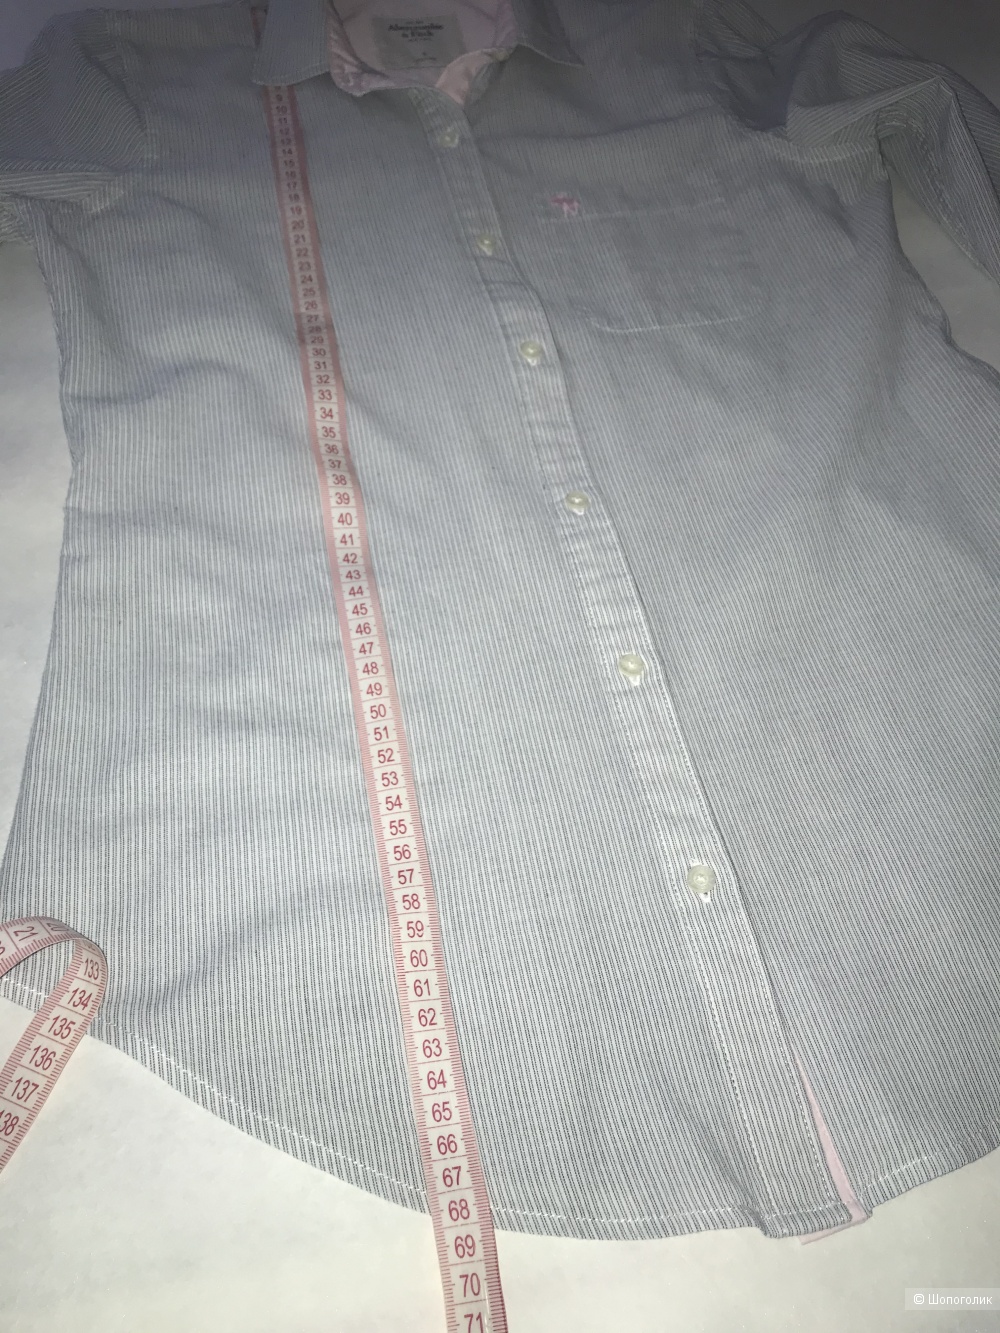 Рубашка Abercrombie & Fitch. Размер: S.